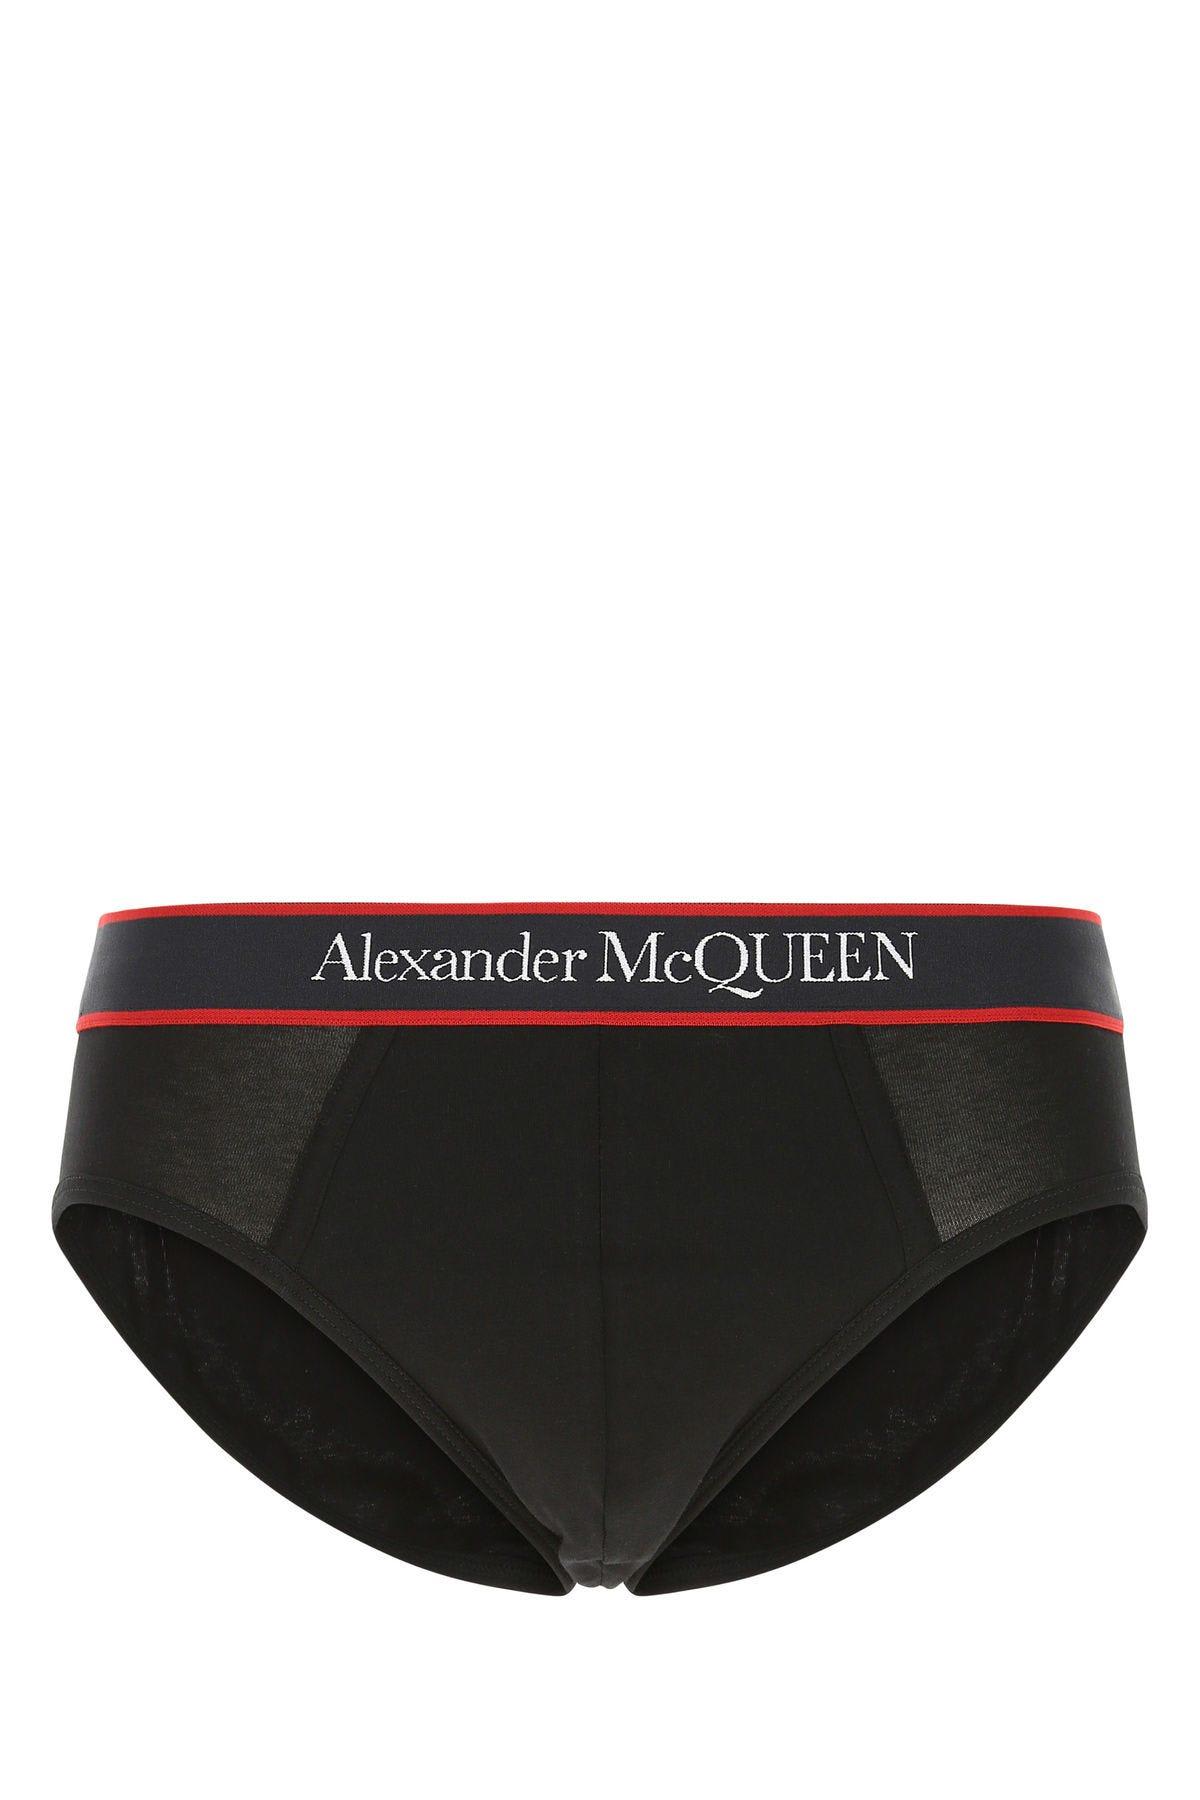 Alexander McQueen Black Stretch Cotton Slip